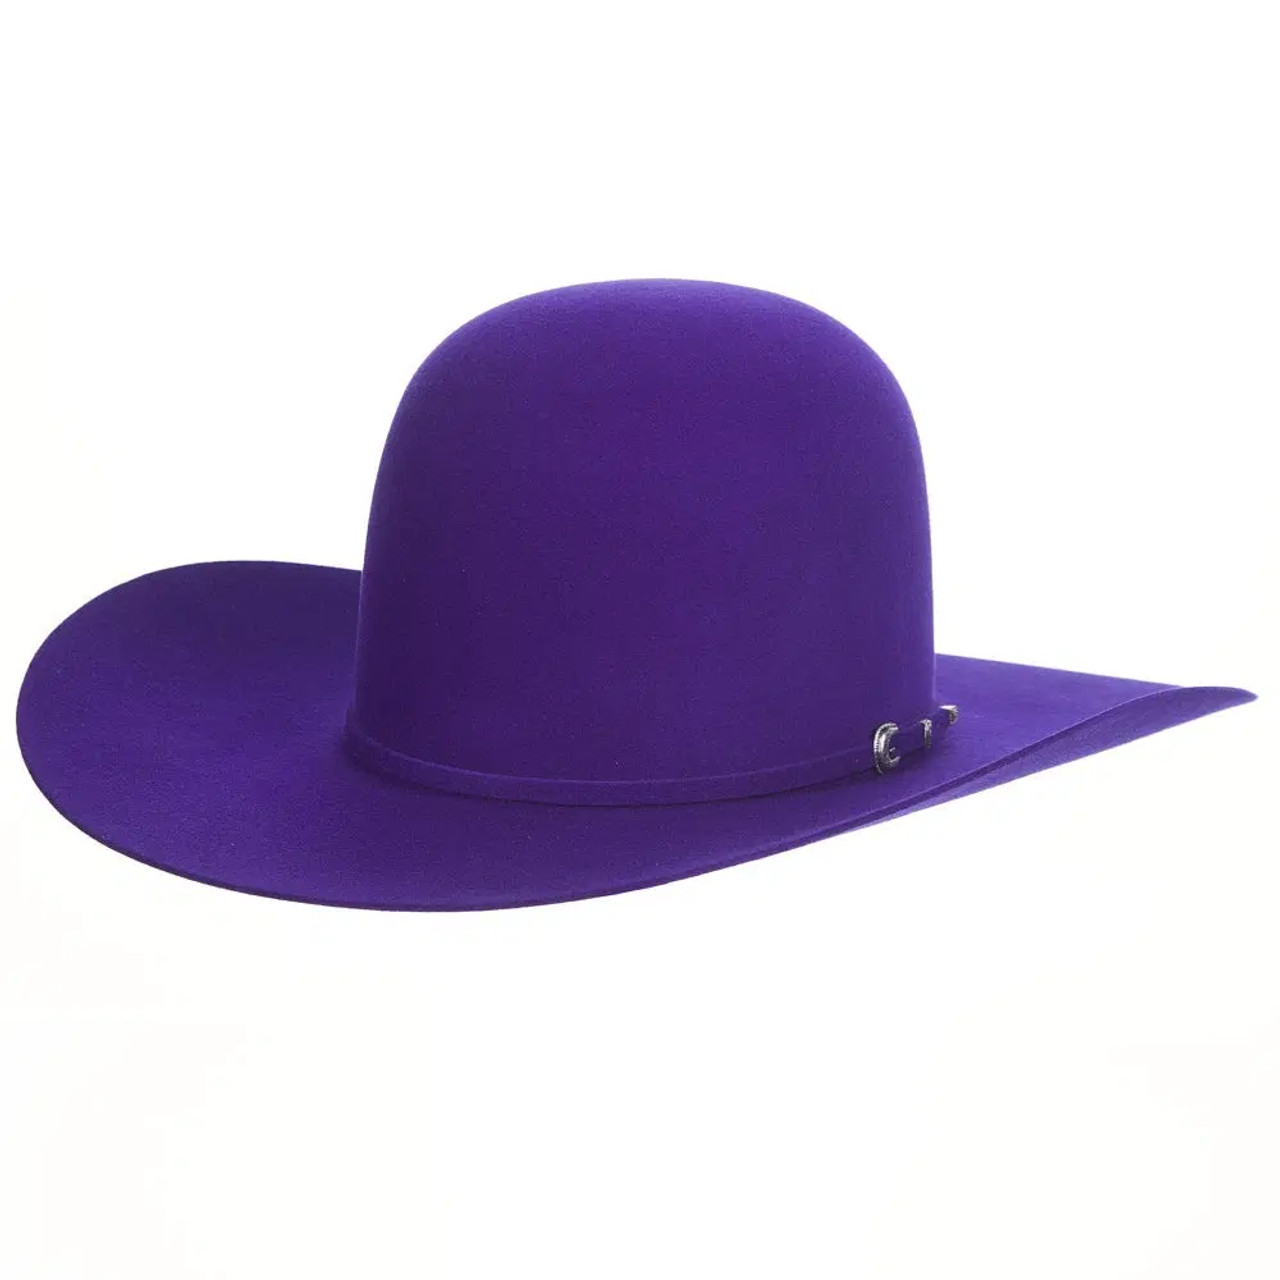 W. Alboum Felt Hats - Rodeo King - 7X - Purple - Billy's Western Wear